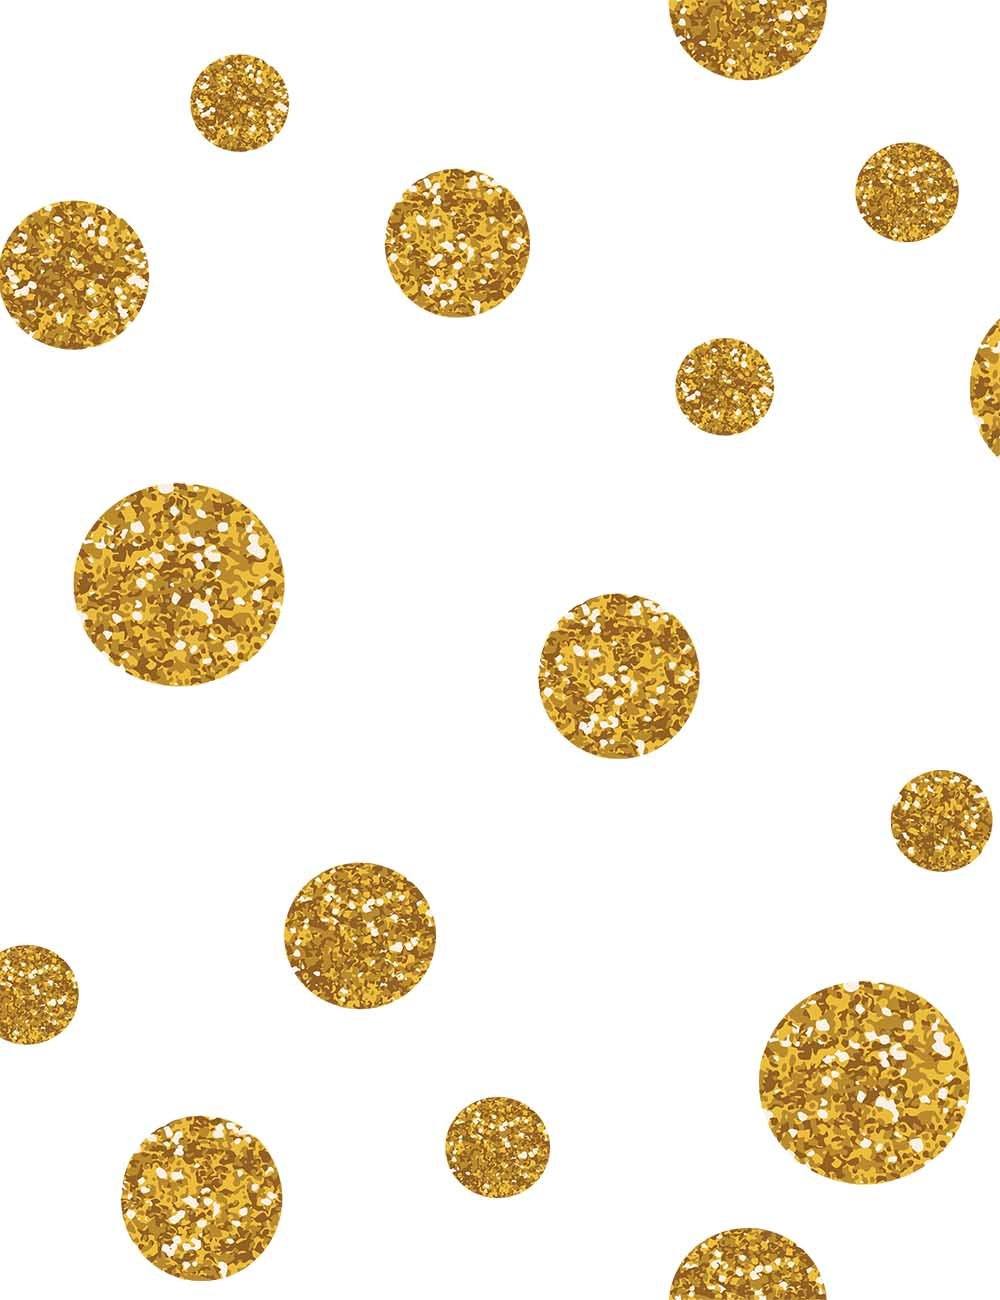 Painted Gold Polka Dots For Holiday Photography Backdrop Shopbackdrop